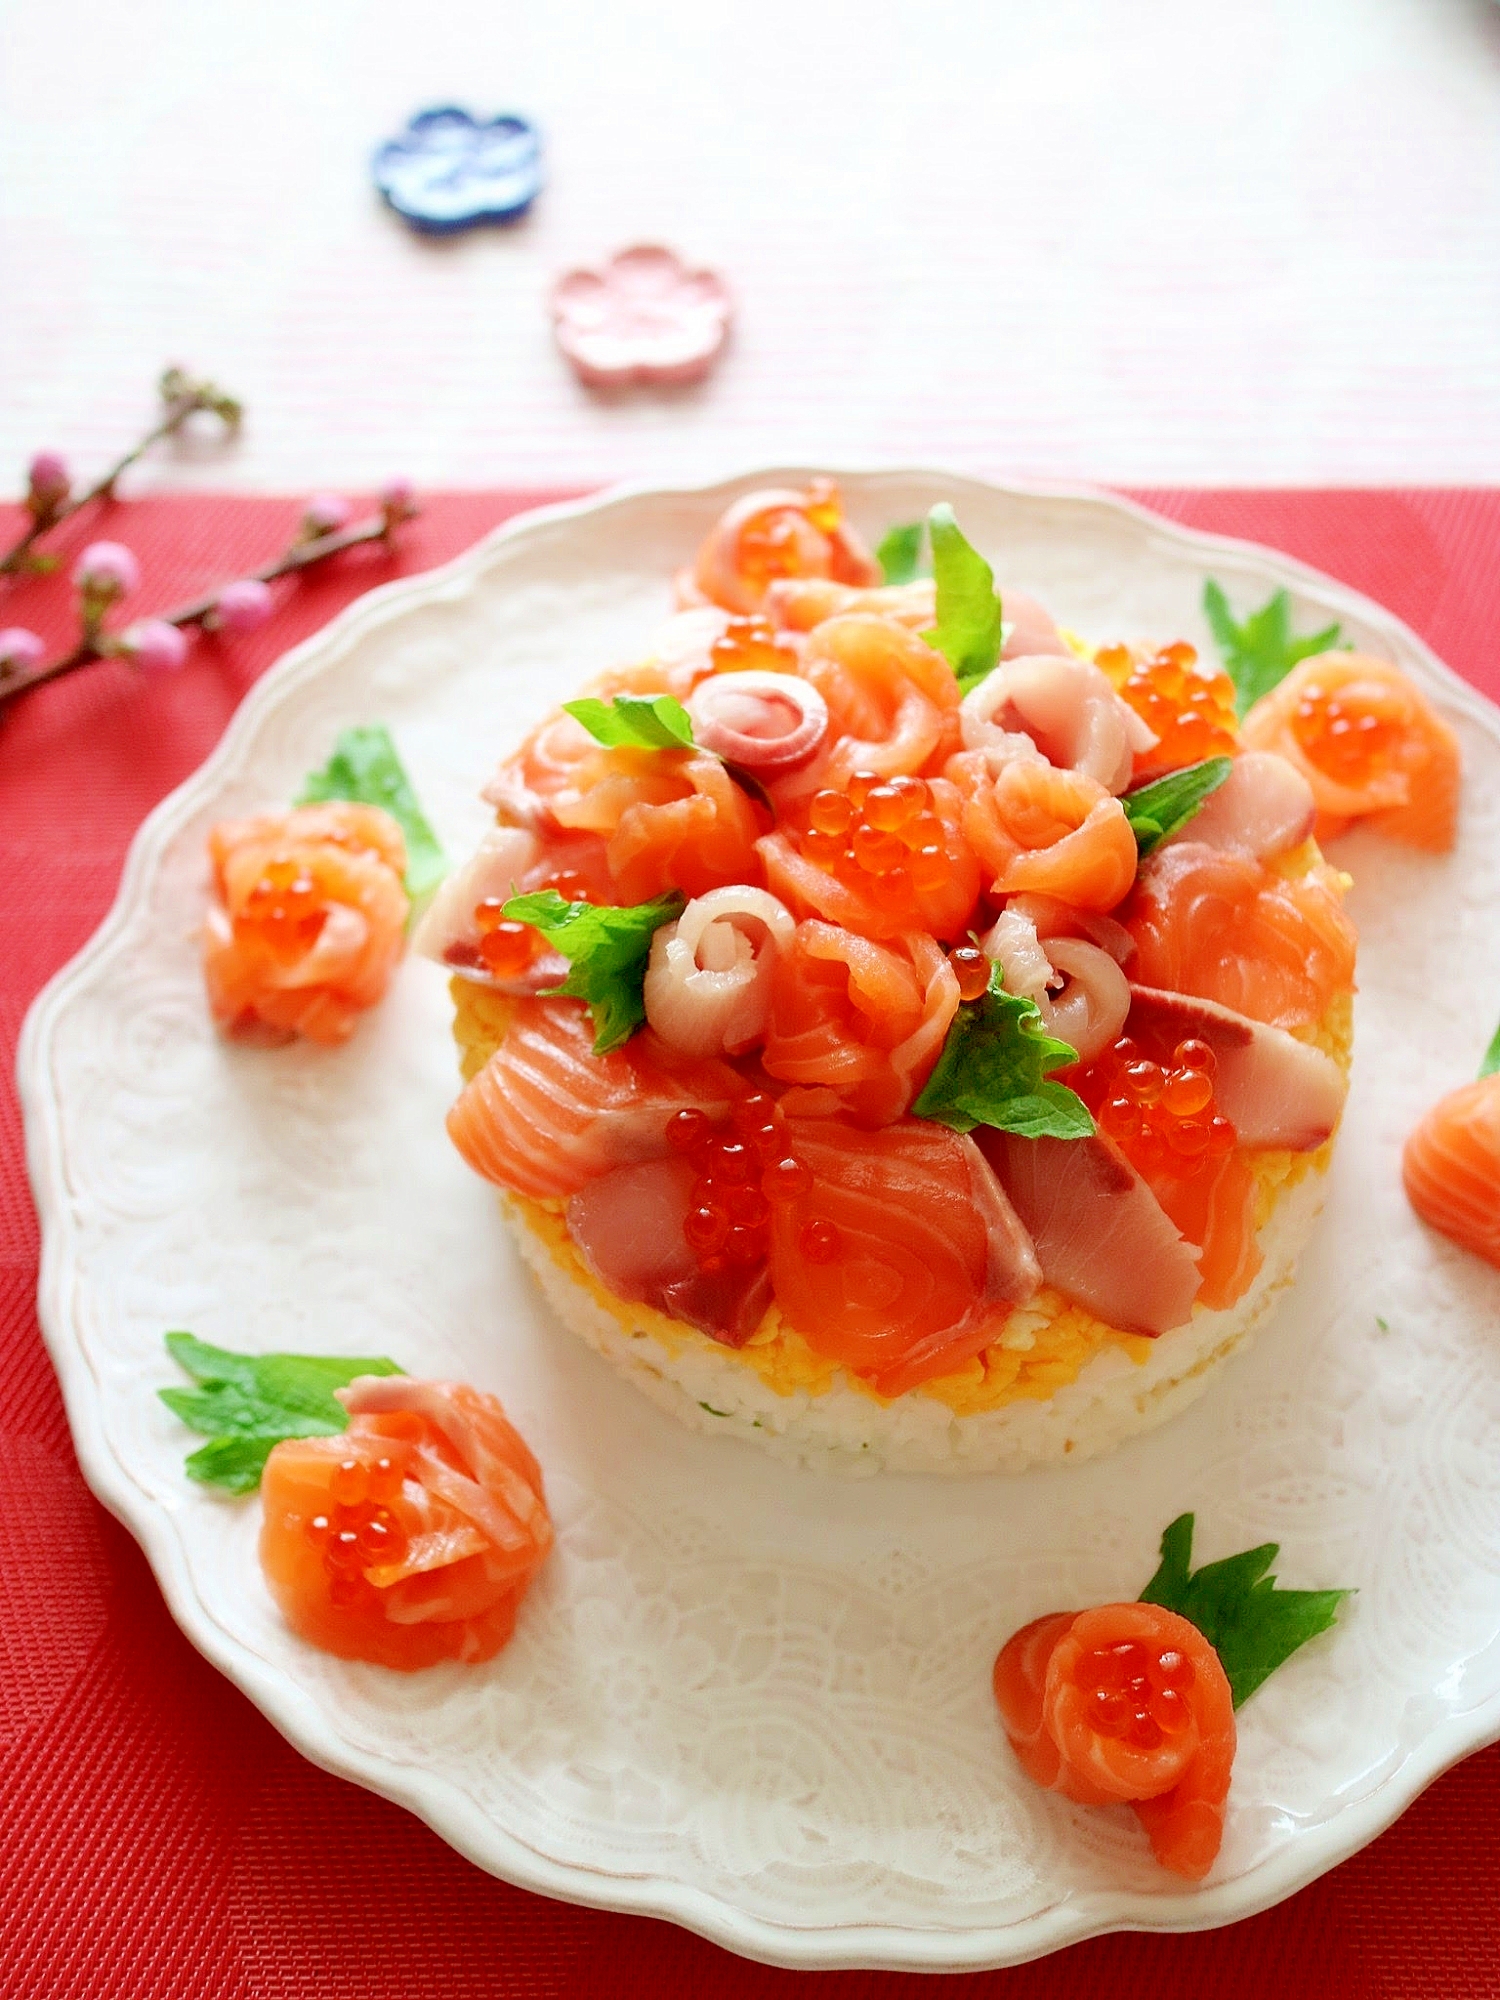 石倉かおりさんのお祝い寿司ケーキ #楽天レシピ